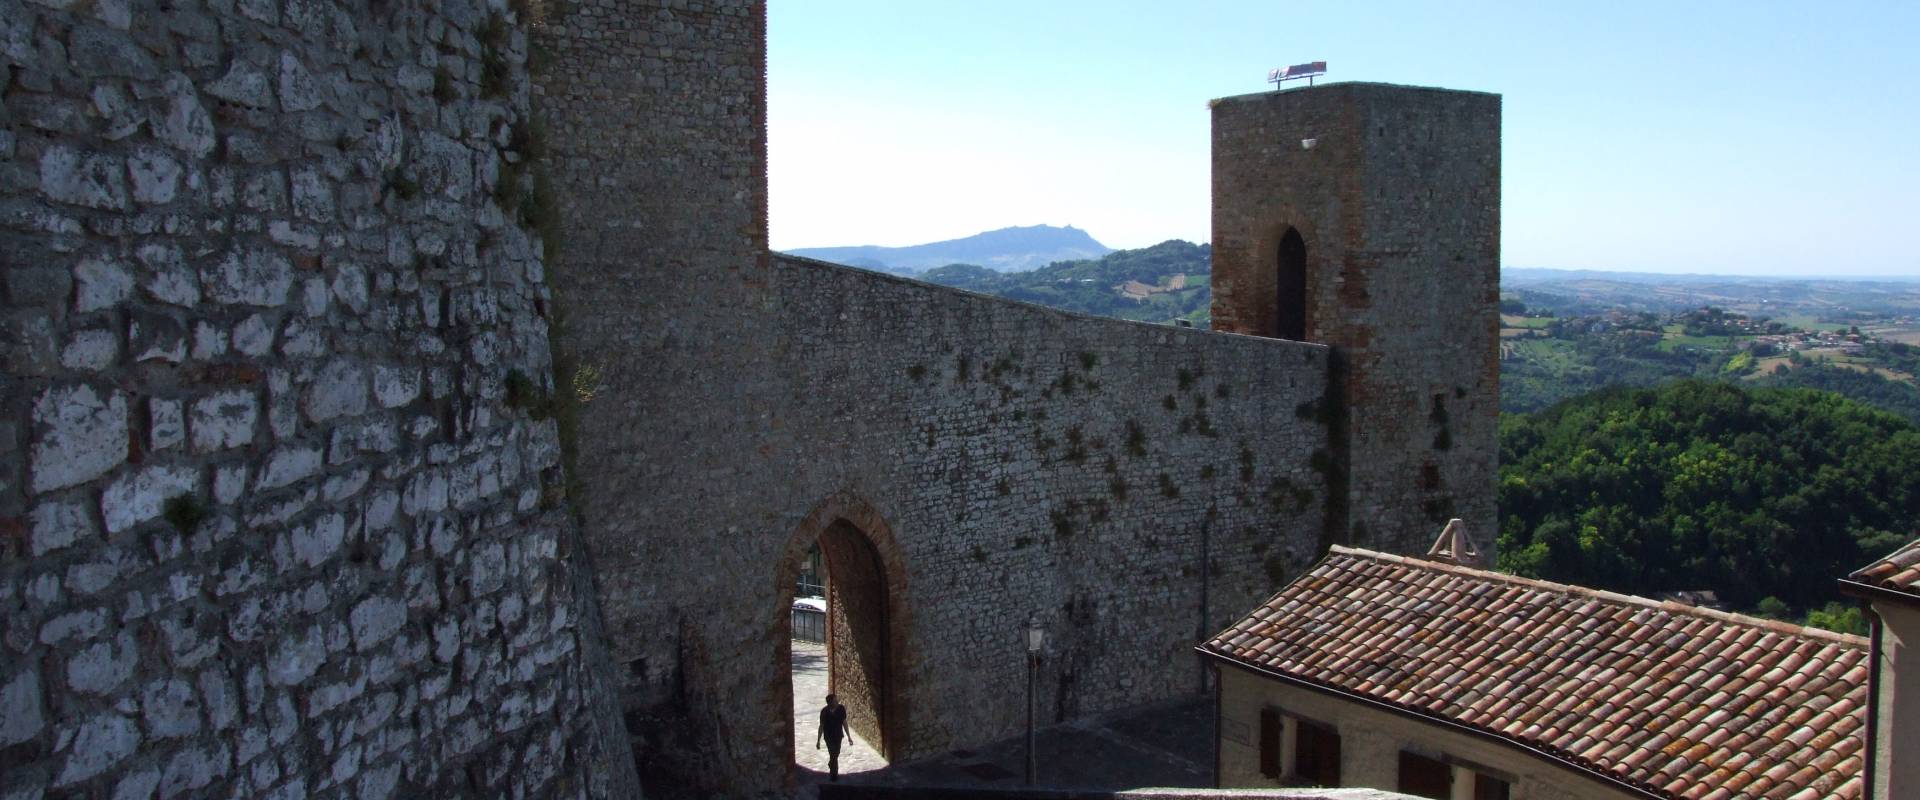 Rocca Malatestiana - Montefiore Conca 9 foto di Diego Baglieri